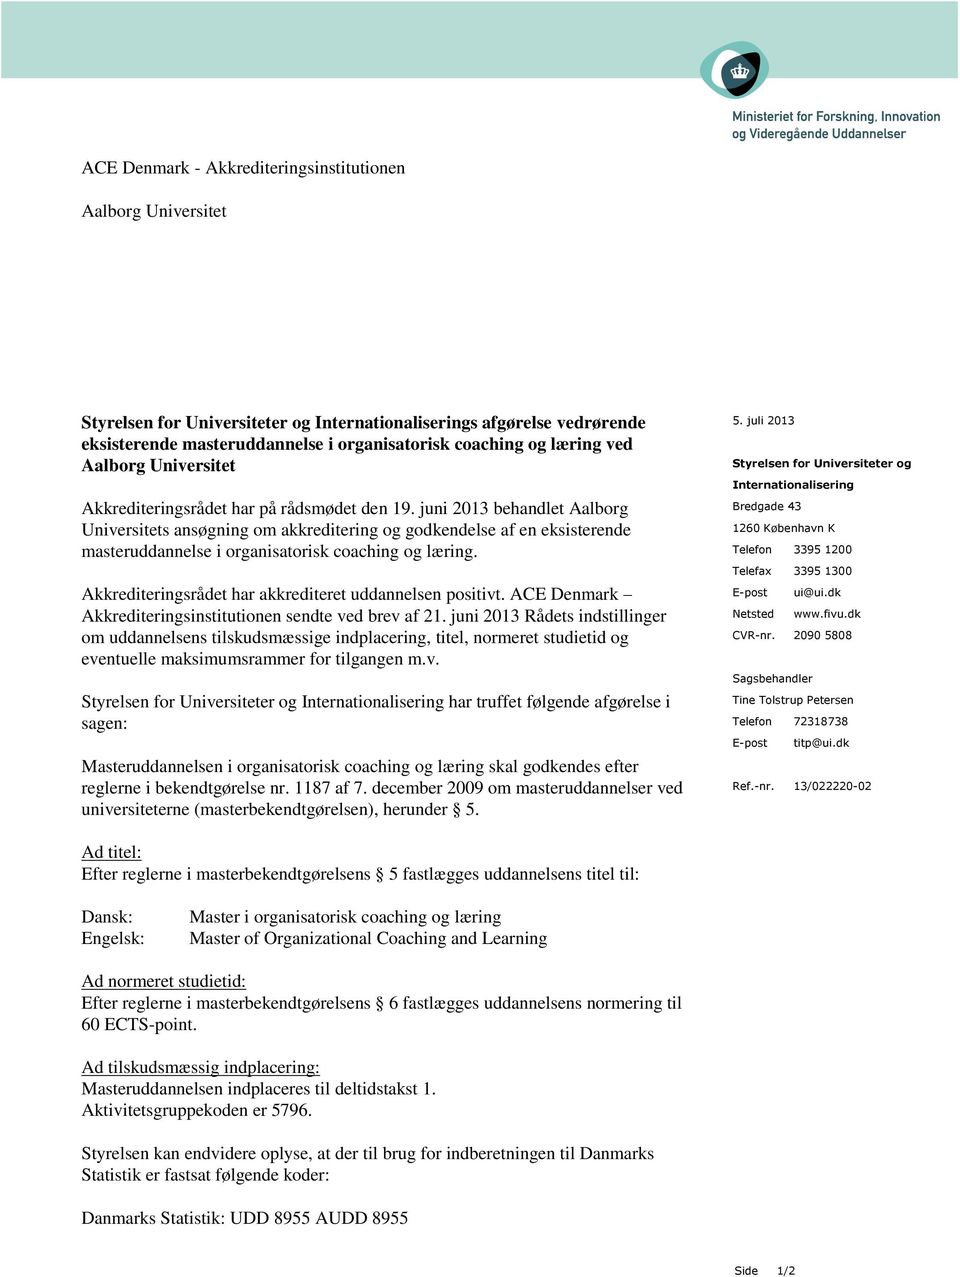 juni 2013 behandlet Aalborg Universitets ansøgning om akkreditering og godkendelse af en eksisterende masteruddannelse i organisatorisk coaching og læring.